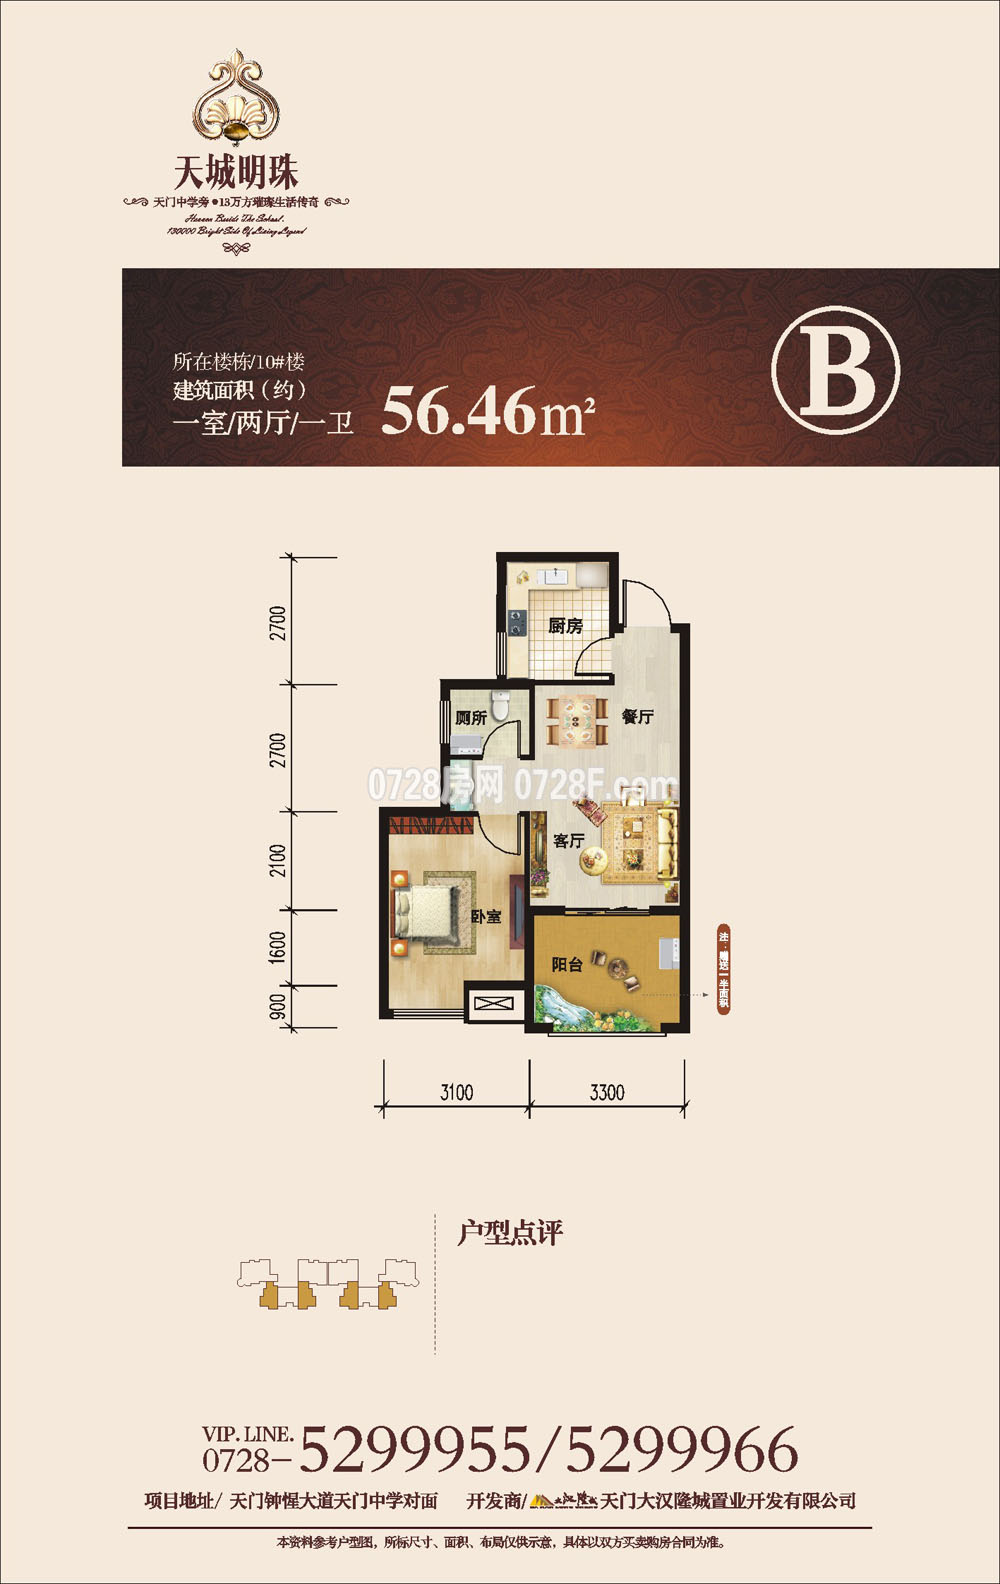  1室户型：1室2厅1卫 面积：56.46㎡ 